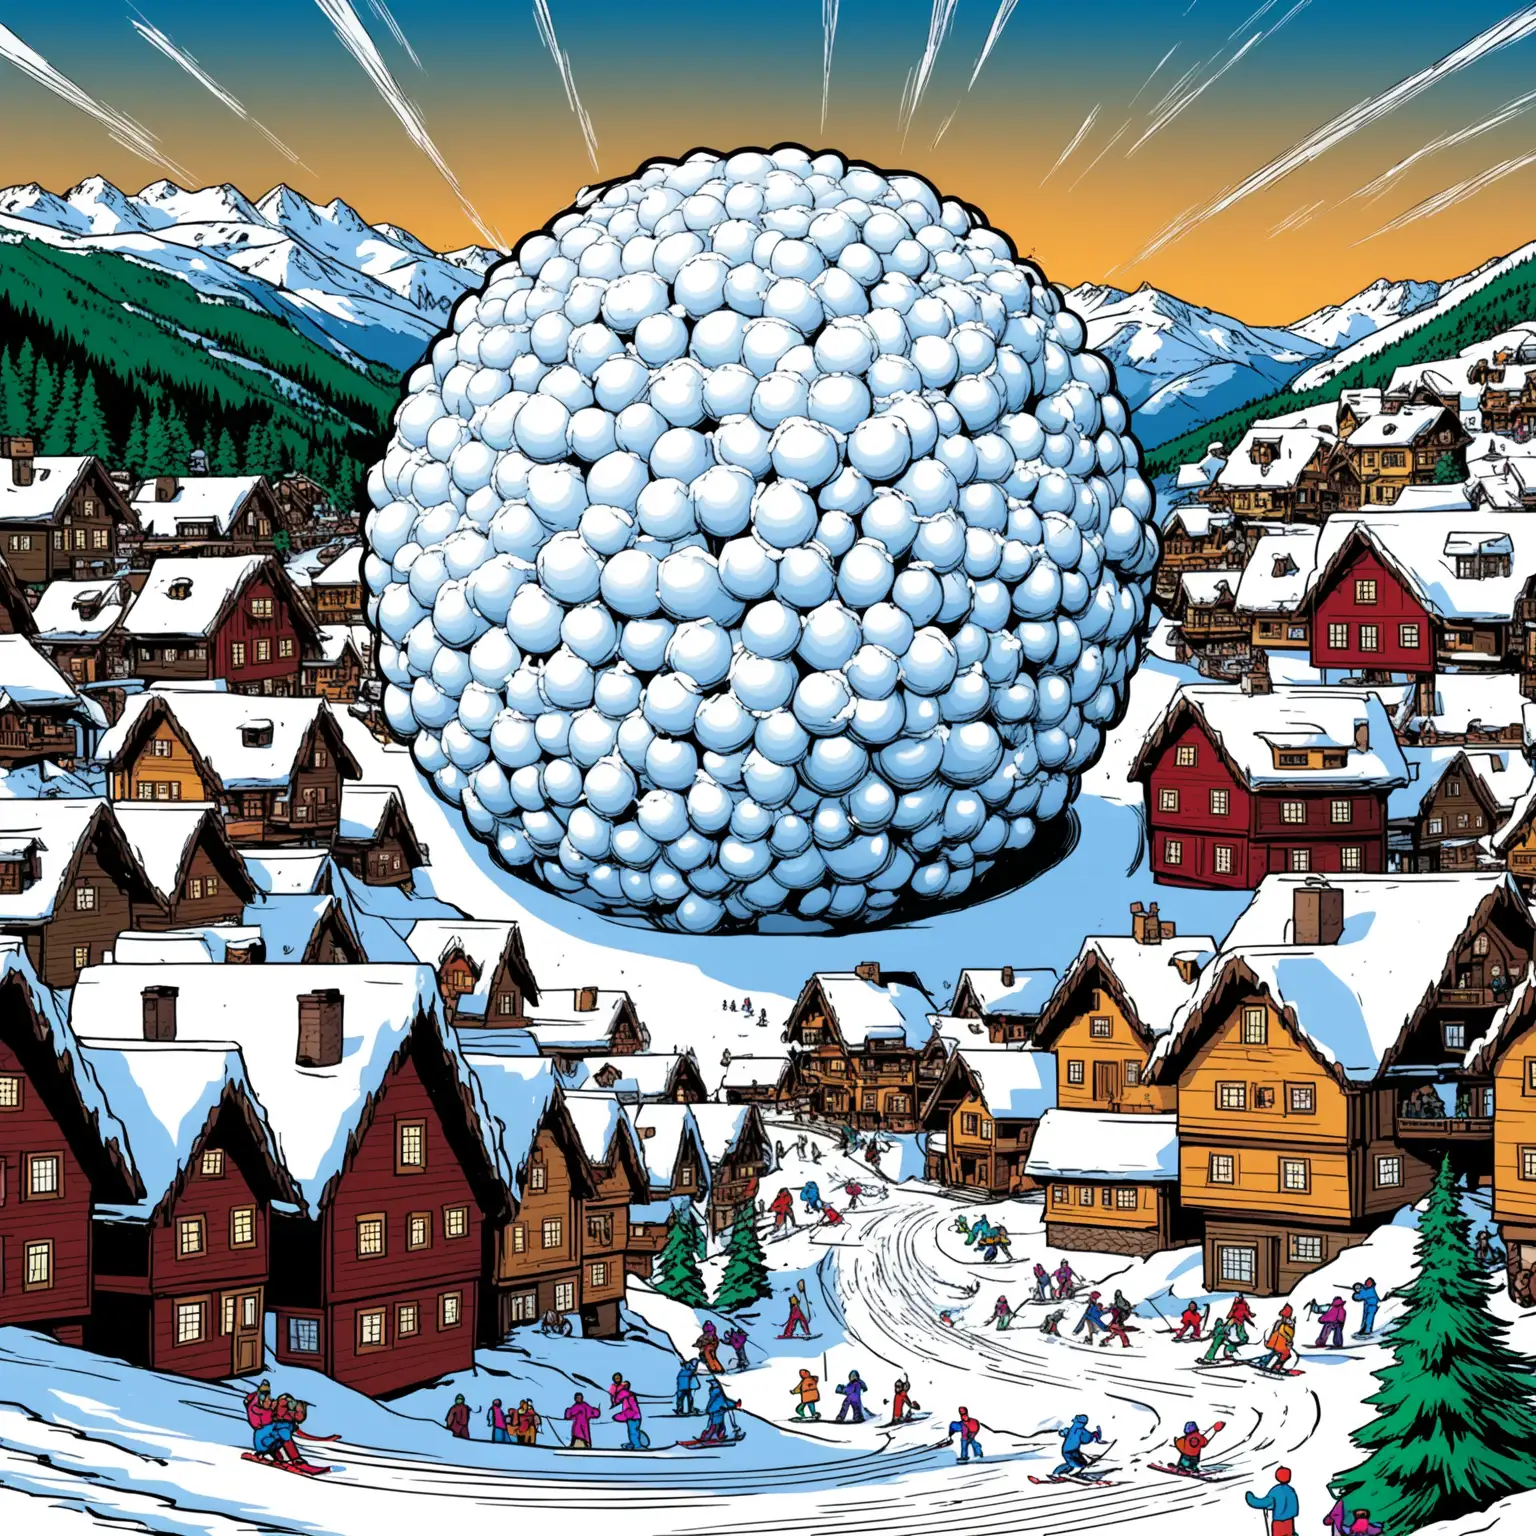 Giant Snowball Rolling Towards Ski Village on Snowy Mountain